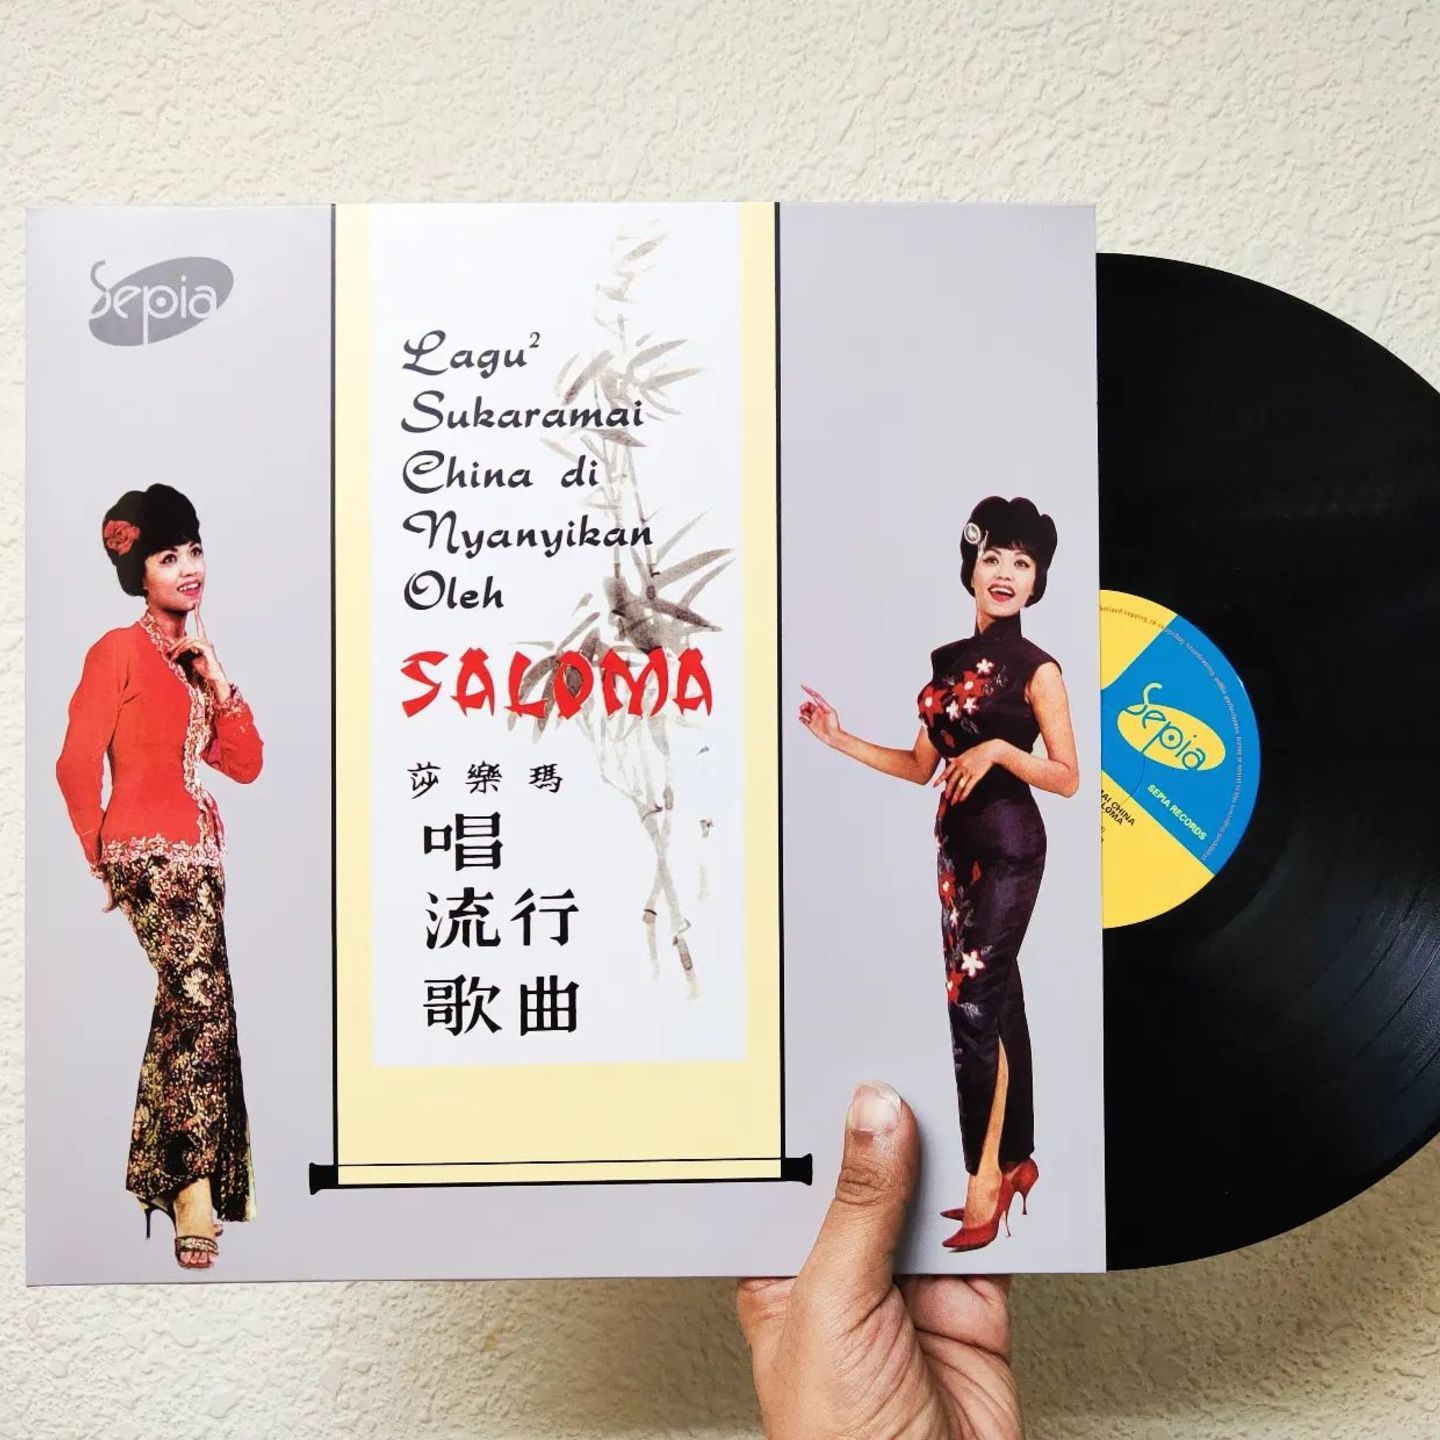 SALOMA - Lagu-lagu Sukaramai China Dinyanyikan Oleh Saloma LP (Black, 180gram vinyl)